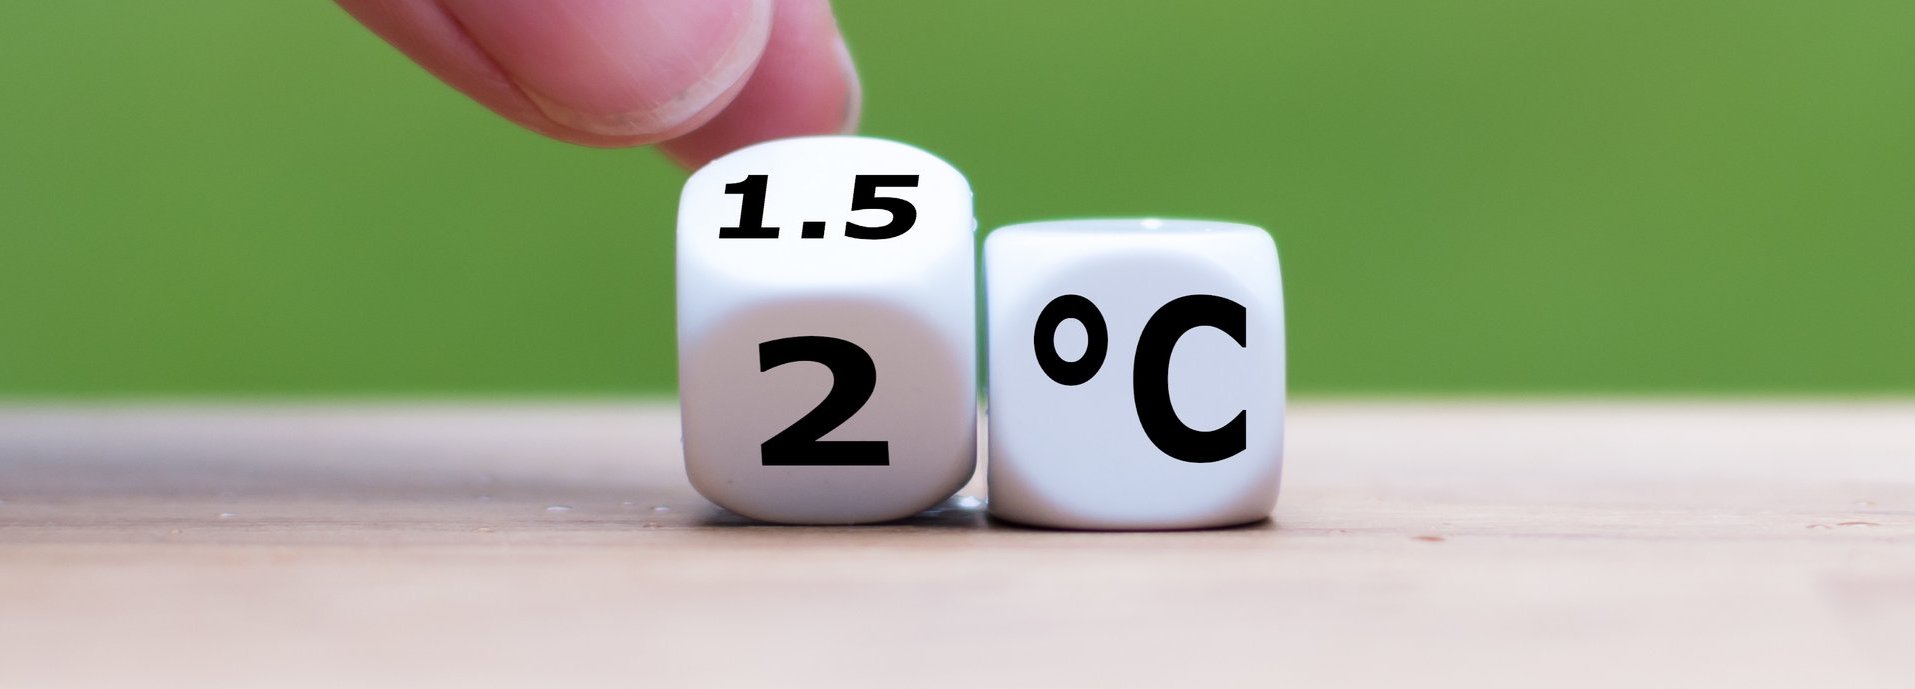 Symbol für die Begrenzung der globalen Erwärmung. Die Hand dreht einen Würfel und ändert den Ausdruck „2°C“ in „1,5°C“ oder umgekehrt.